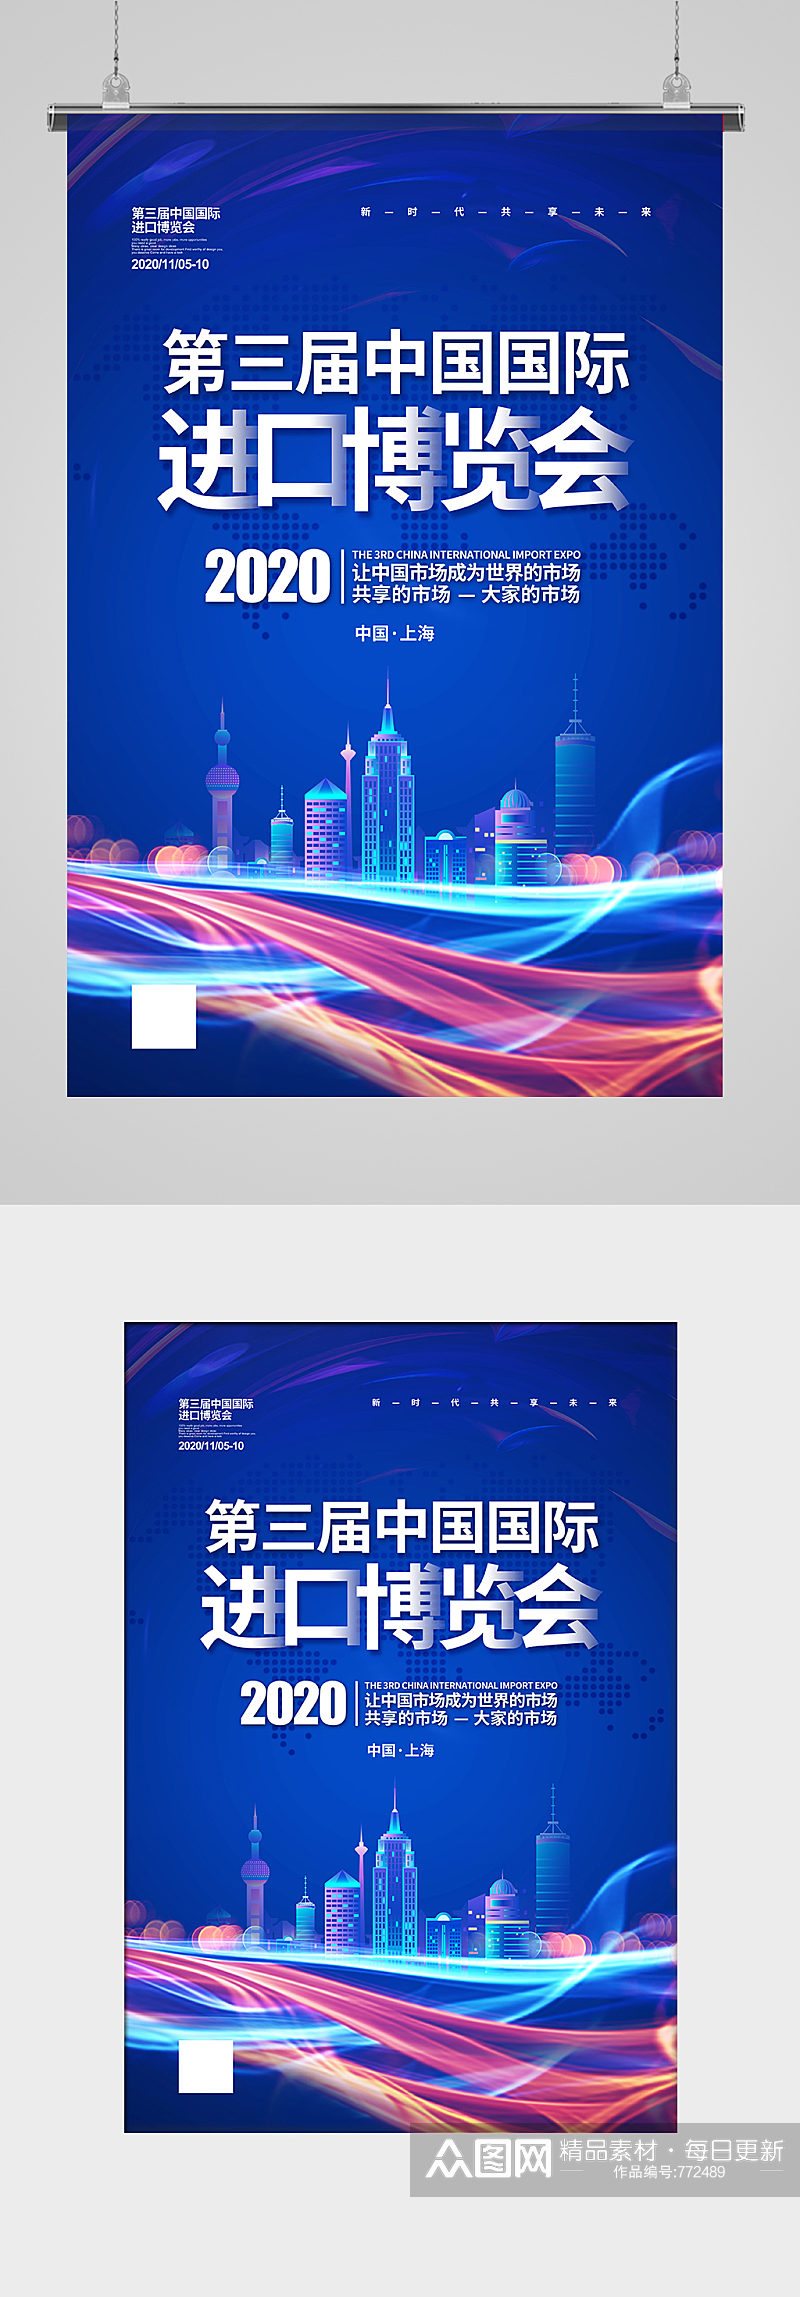 中国国际进口博览会宣传海报设计素材